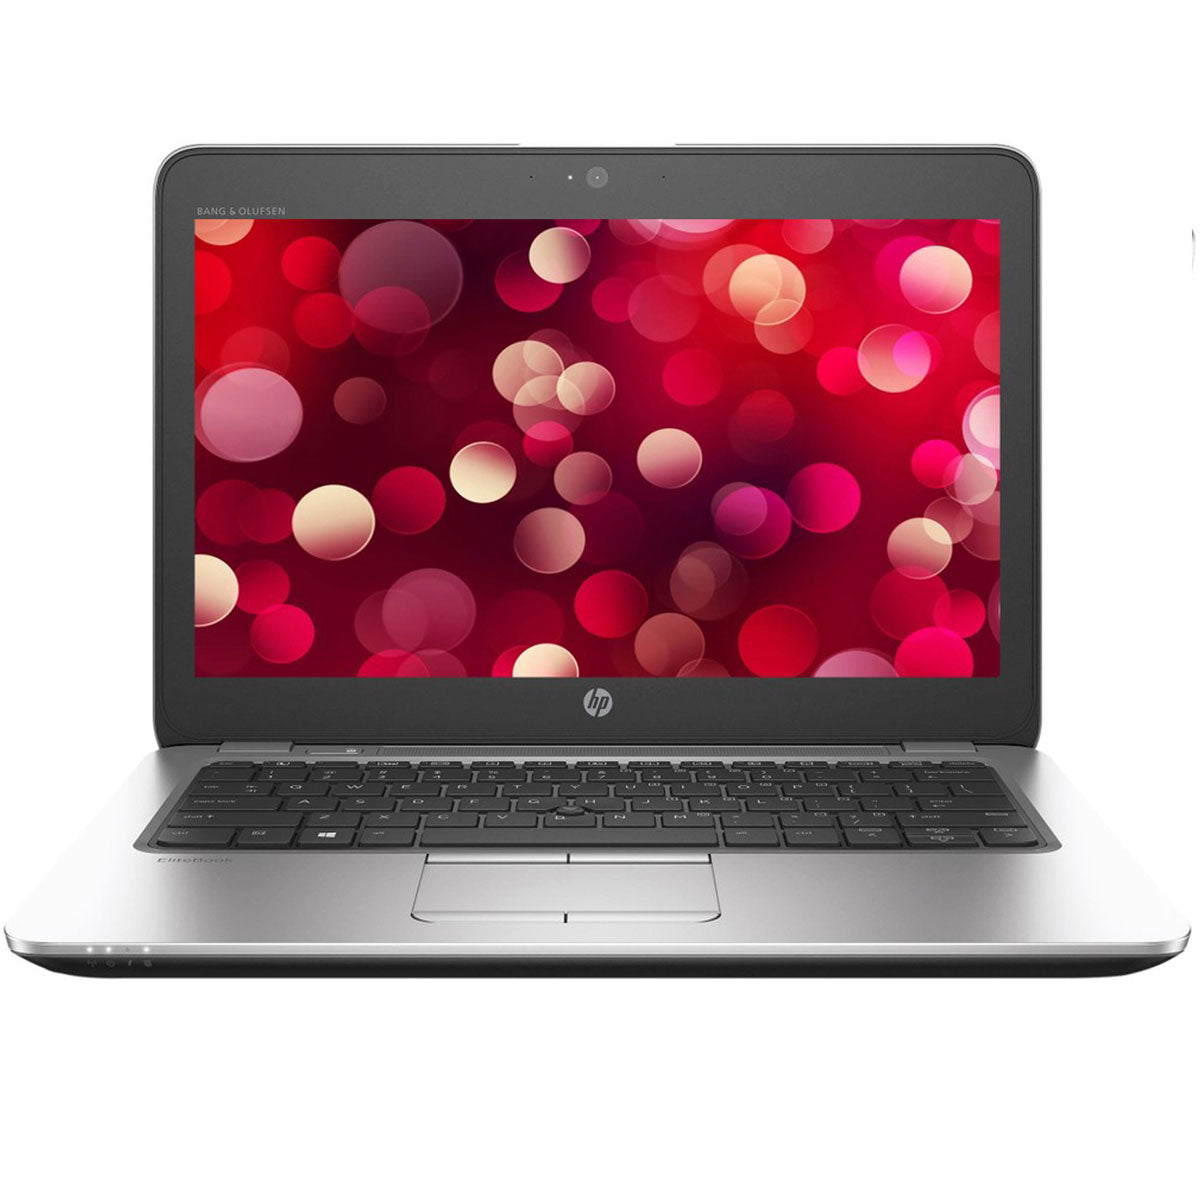 HP EliteBook 820 G3 Intel Core i5 6th Gen 8GB RAM 256GB SSD 12.5 Inches FHD